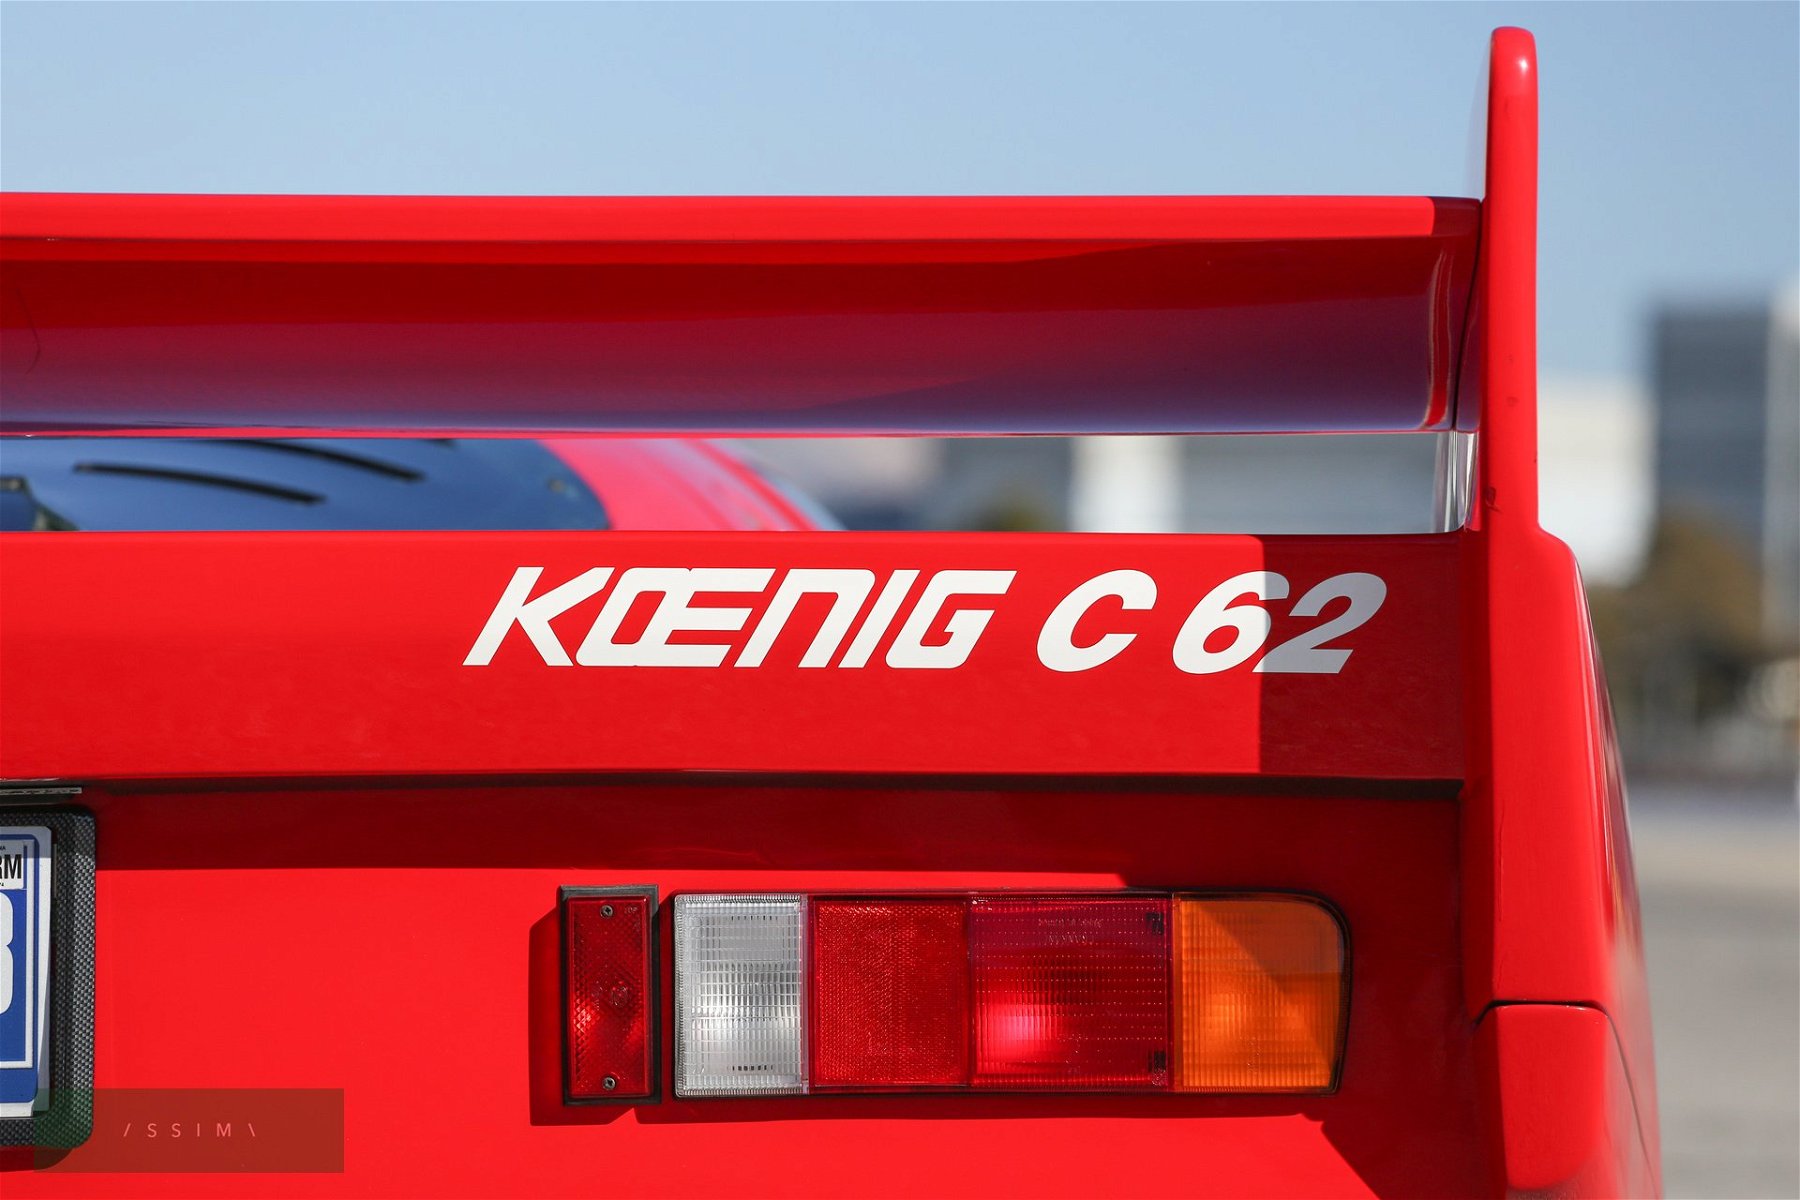 Koenig C62 review, specs, stats, comparison, rivals, data, details